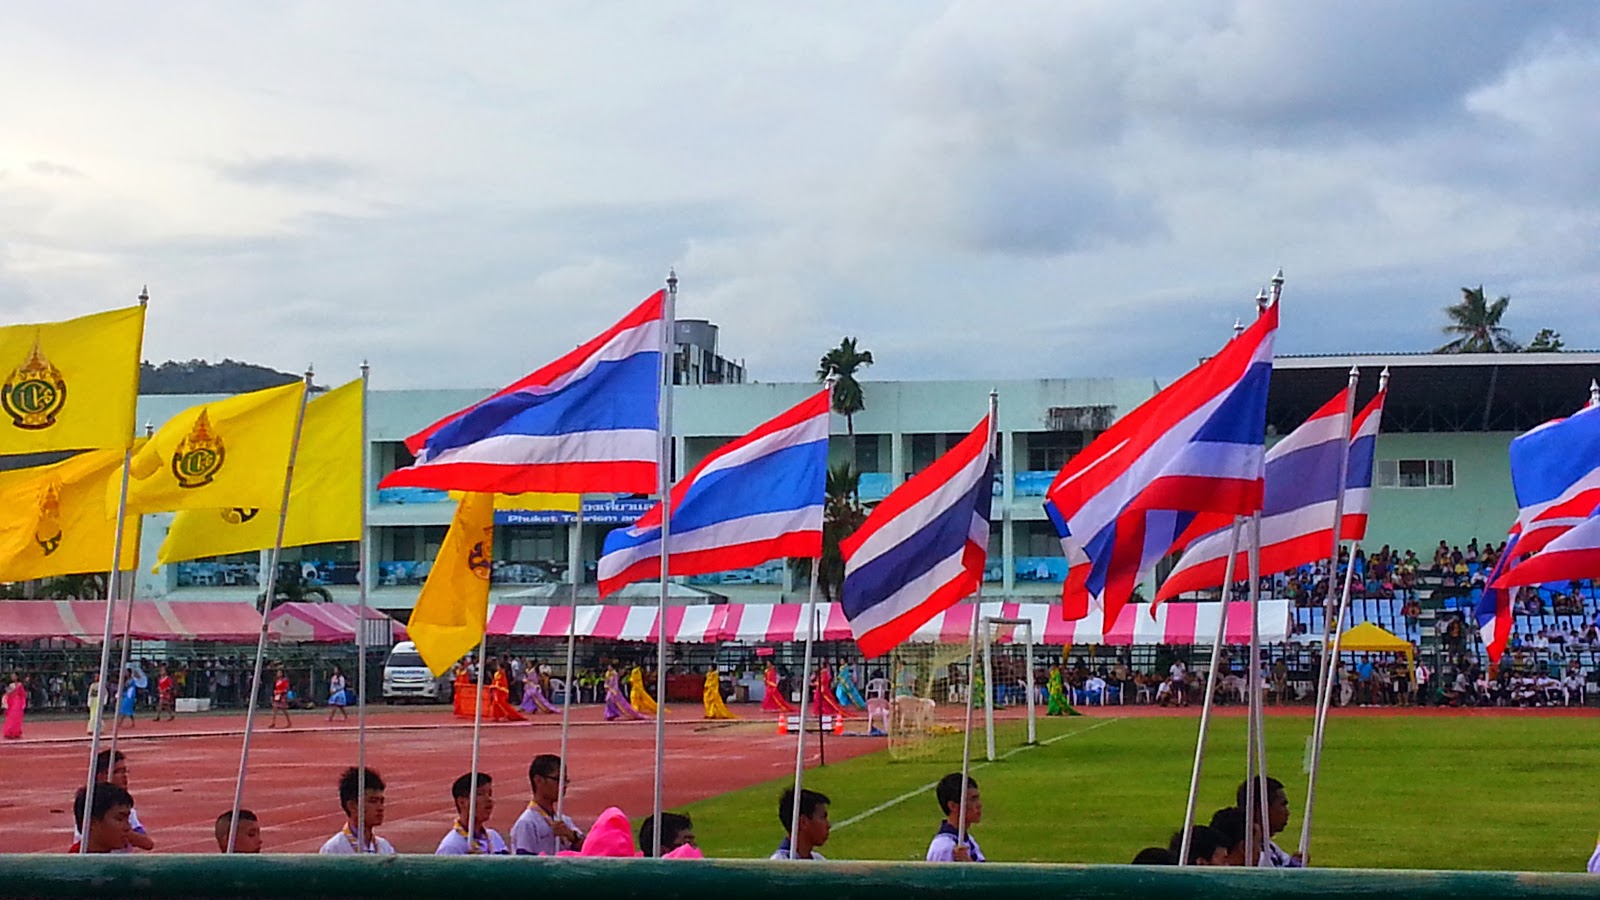 Phuket Stadium